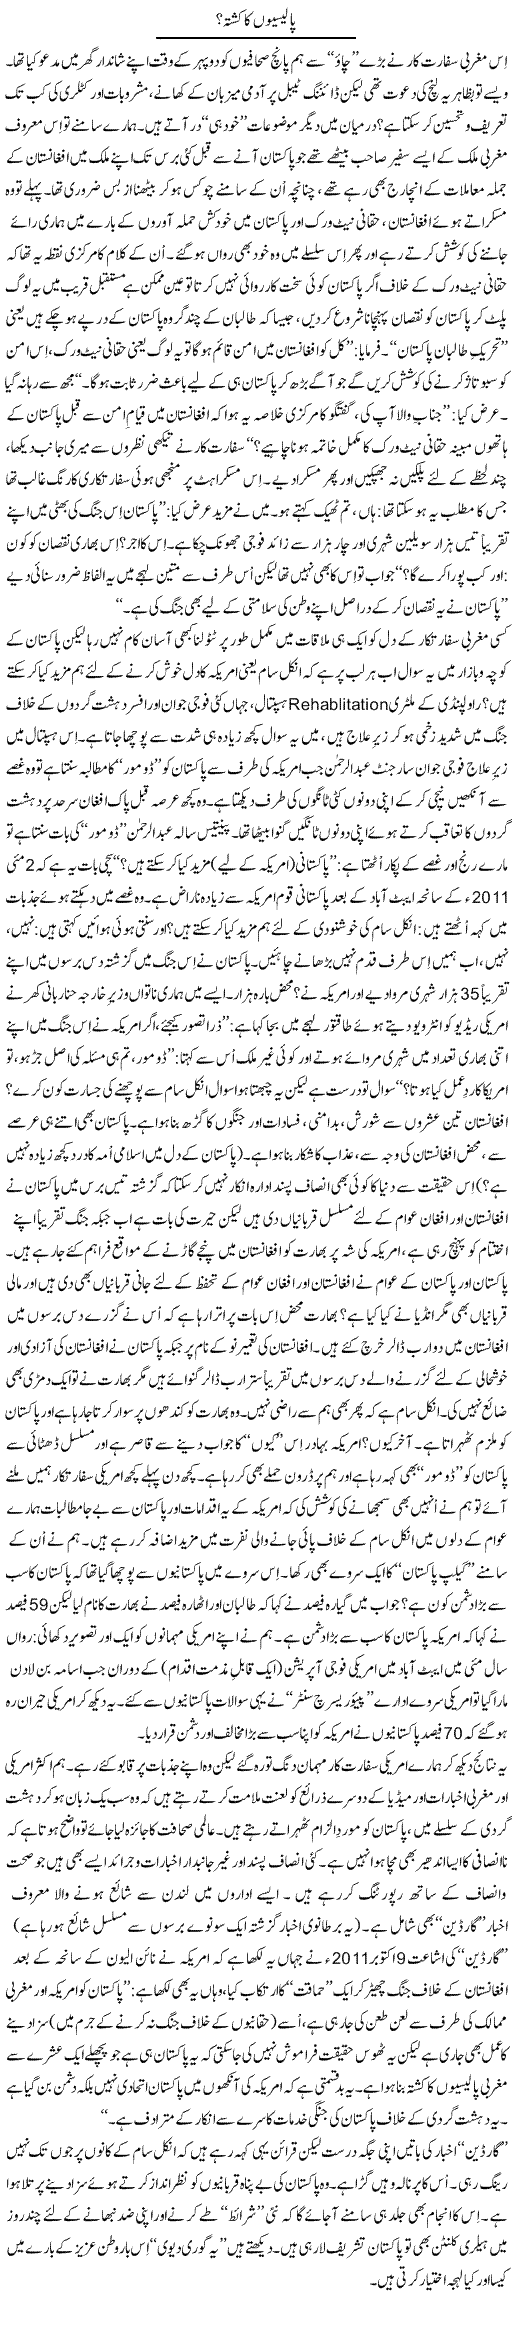 Pakistan Afghanistan Express Column Tanvir Qasir 17 October 2011